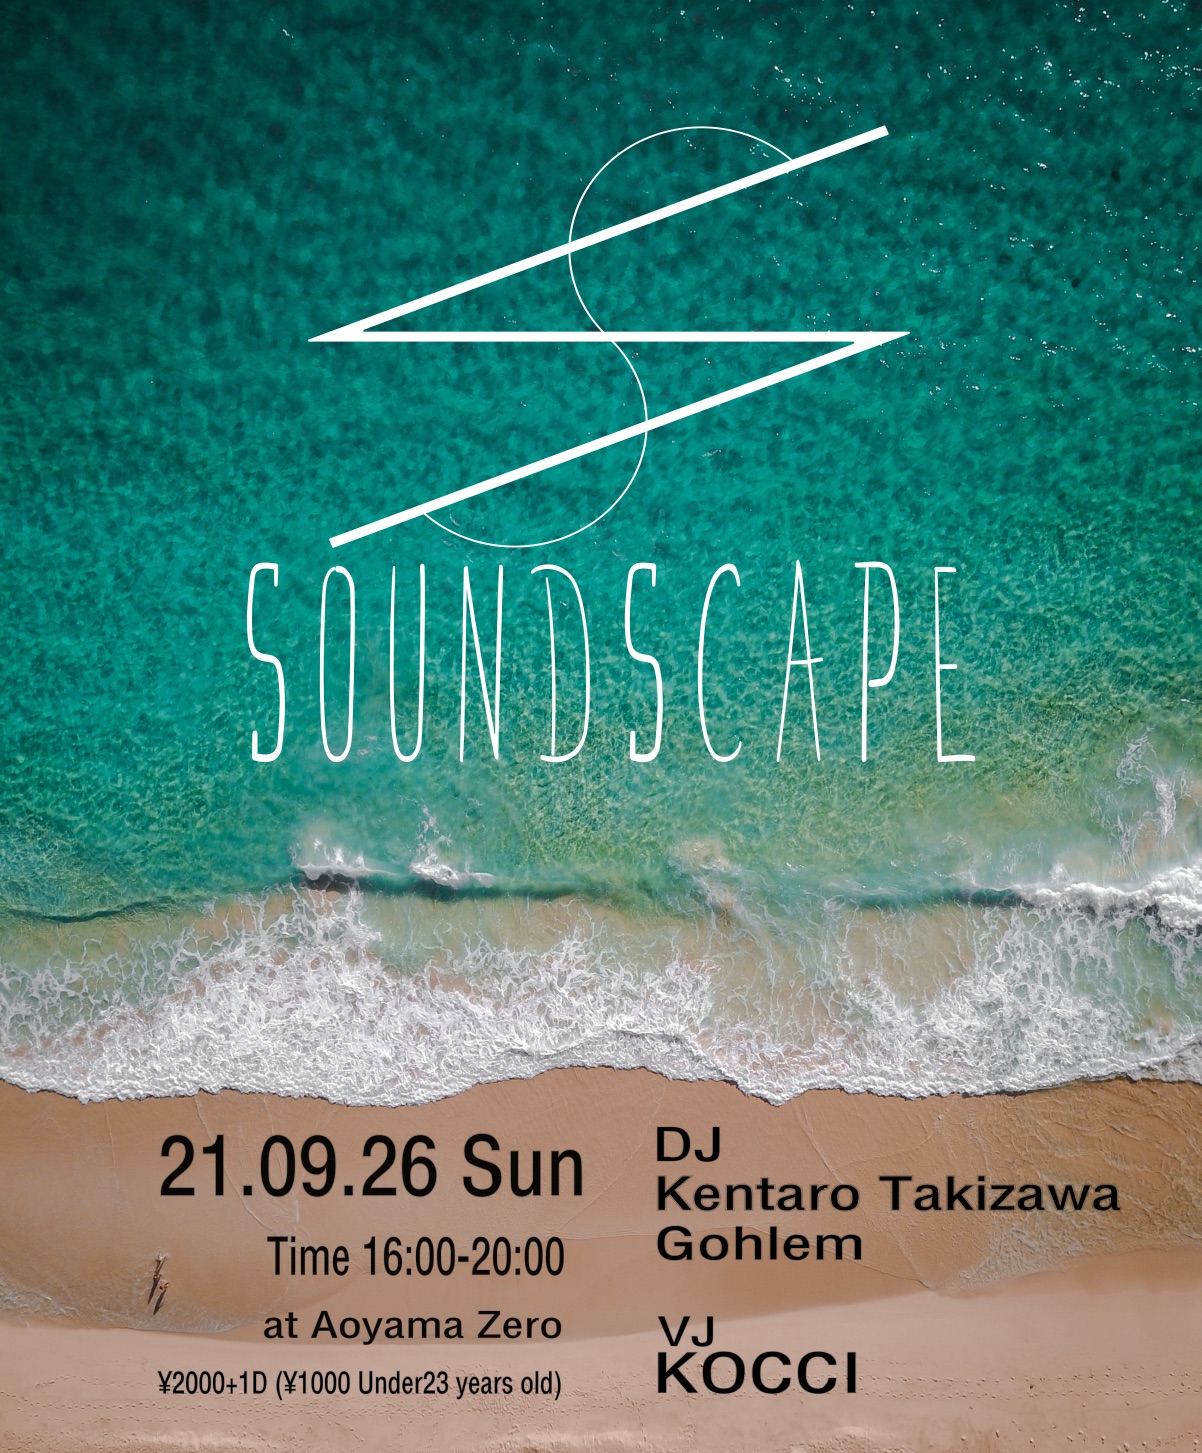 SoundScape